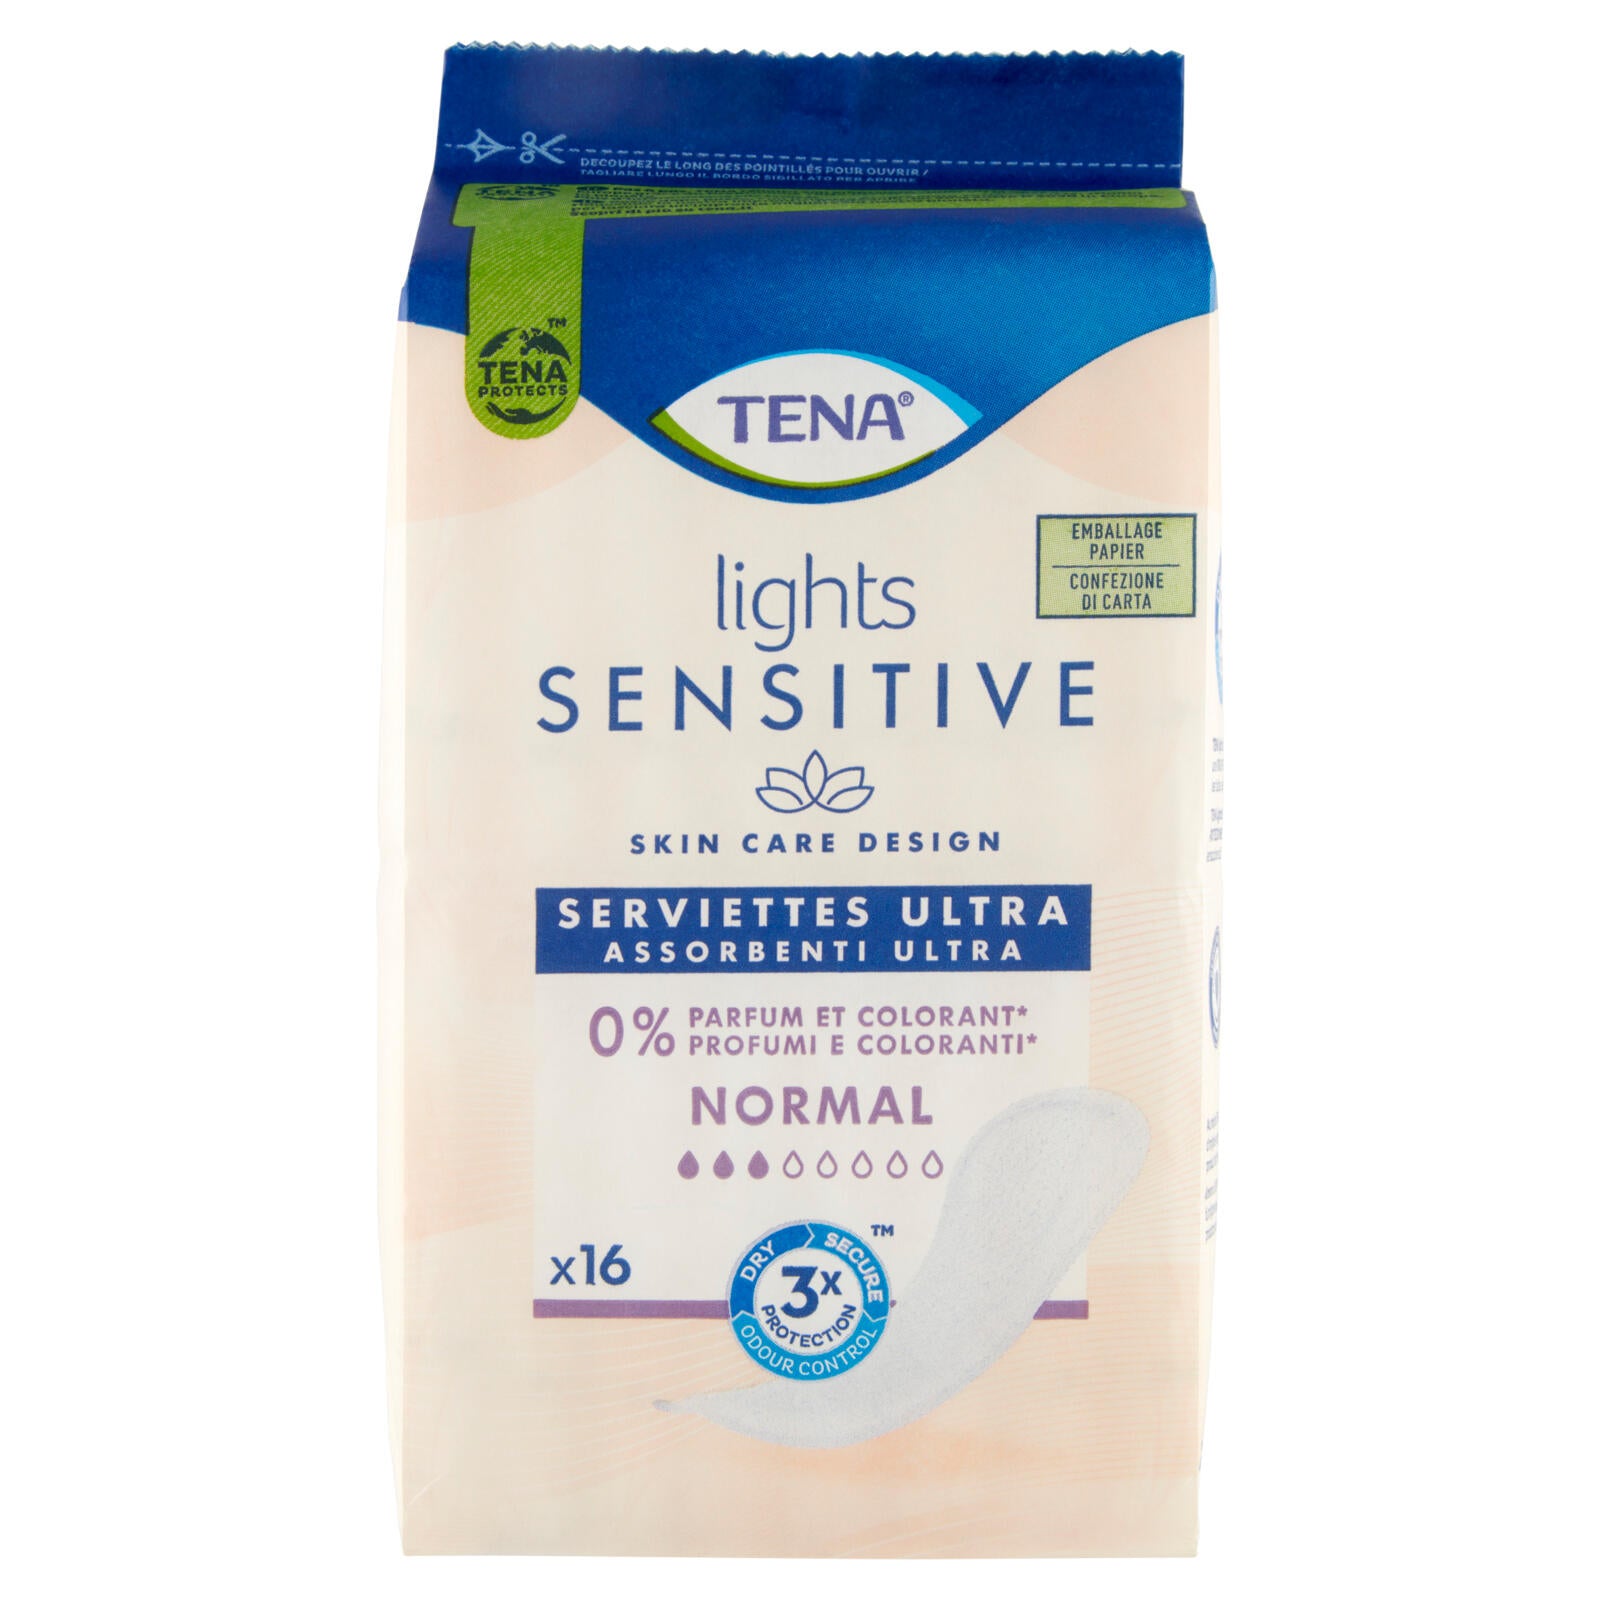 Tena lights Sensitive Assorbenti Ultra Normal 16 pz